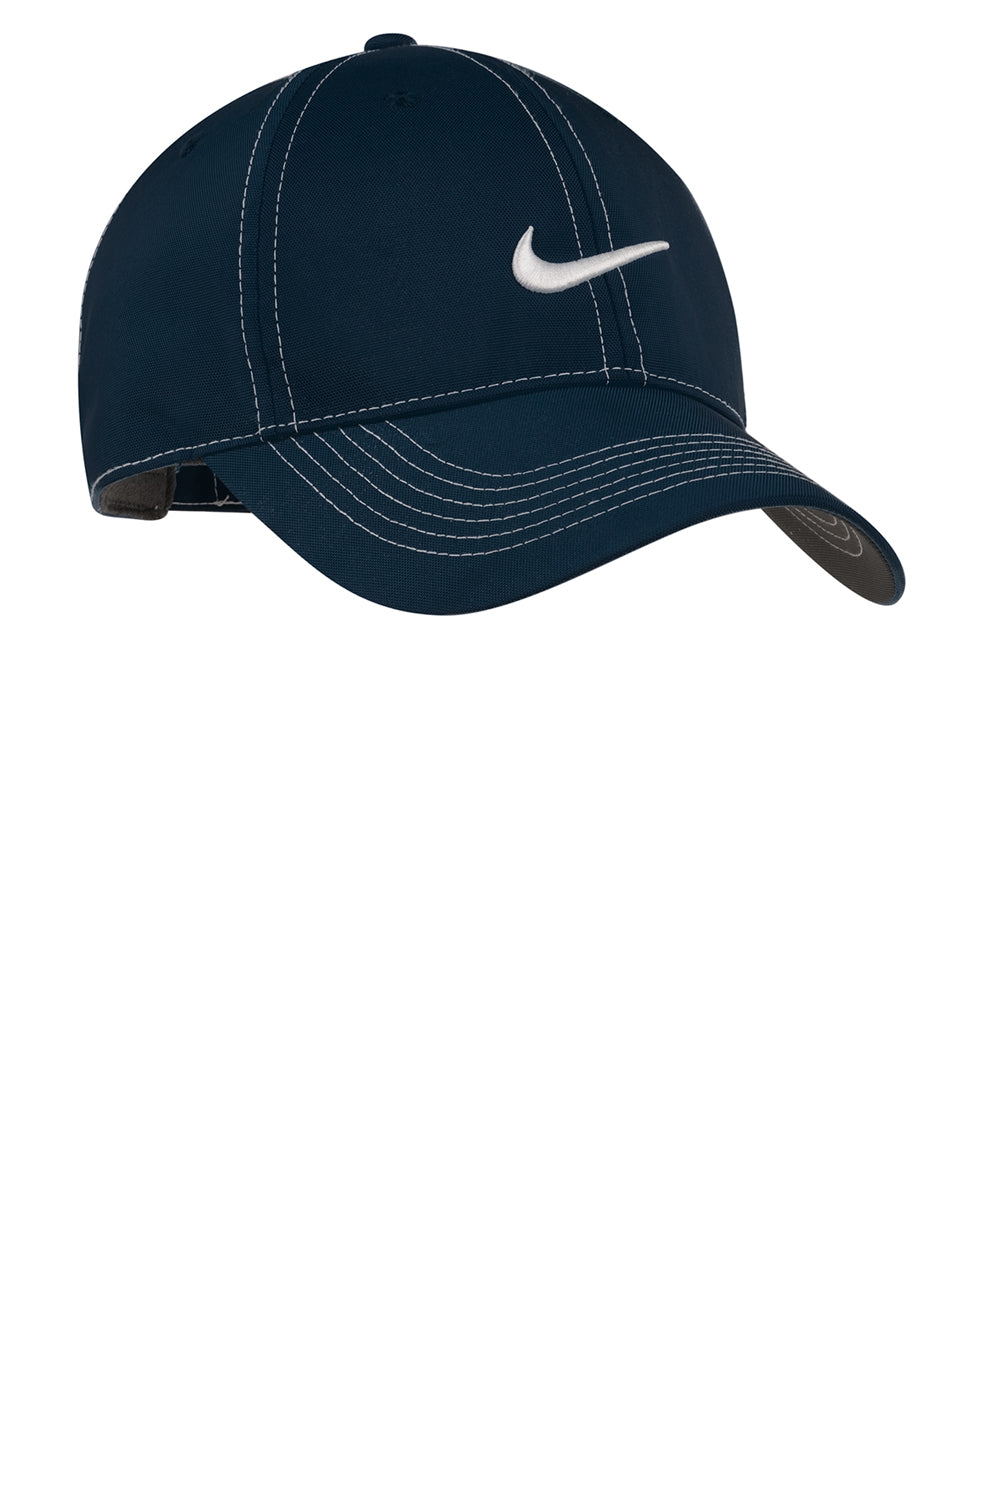 Nike 333114 Mens Adjustable Hat Navy Blue Front